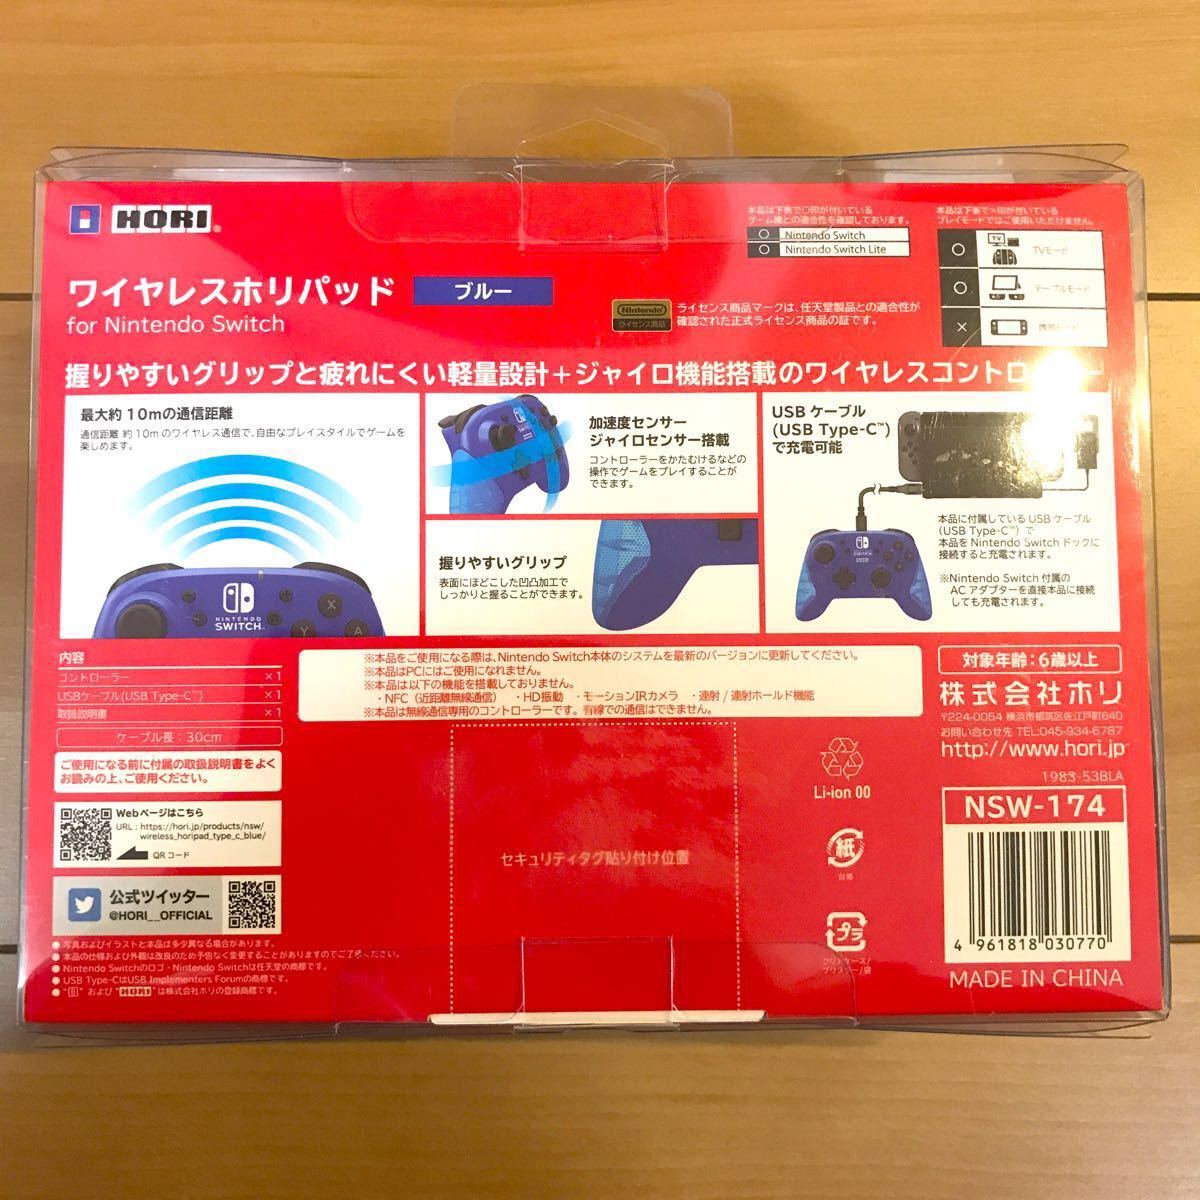 ワイヤレスホリパッド for Nintendo Switch ブルー【即日発送】